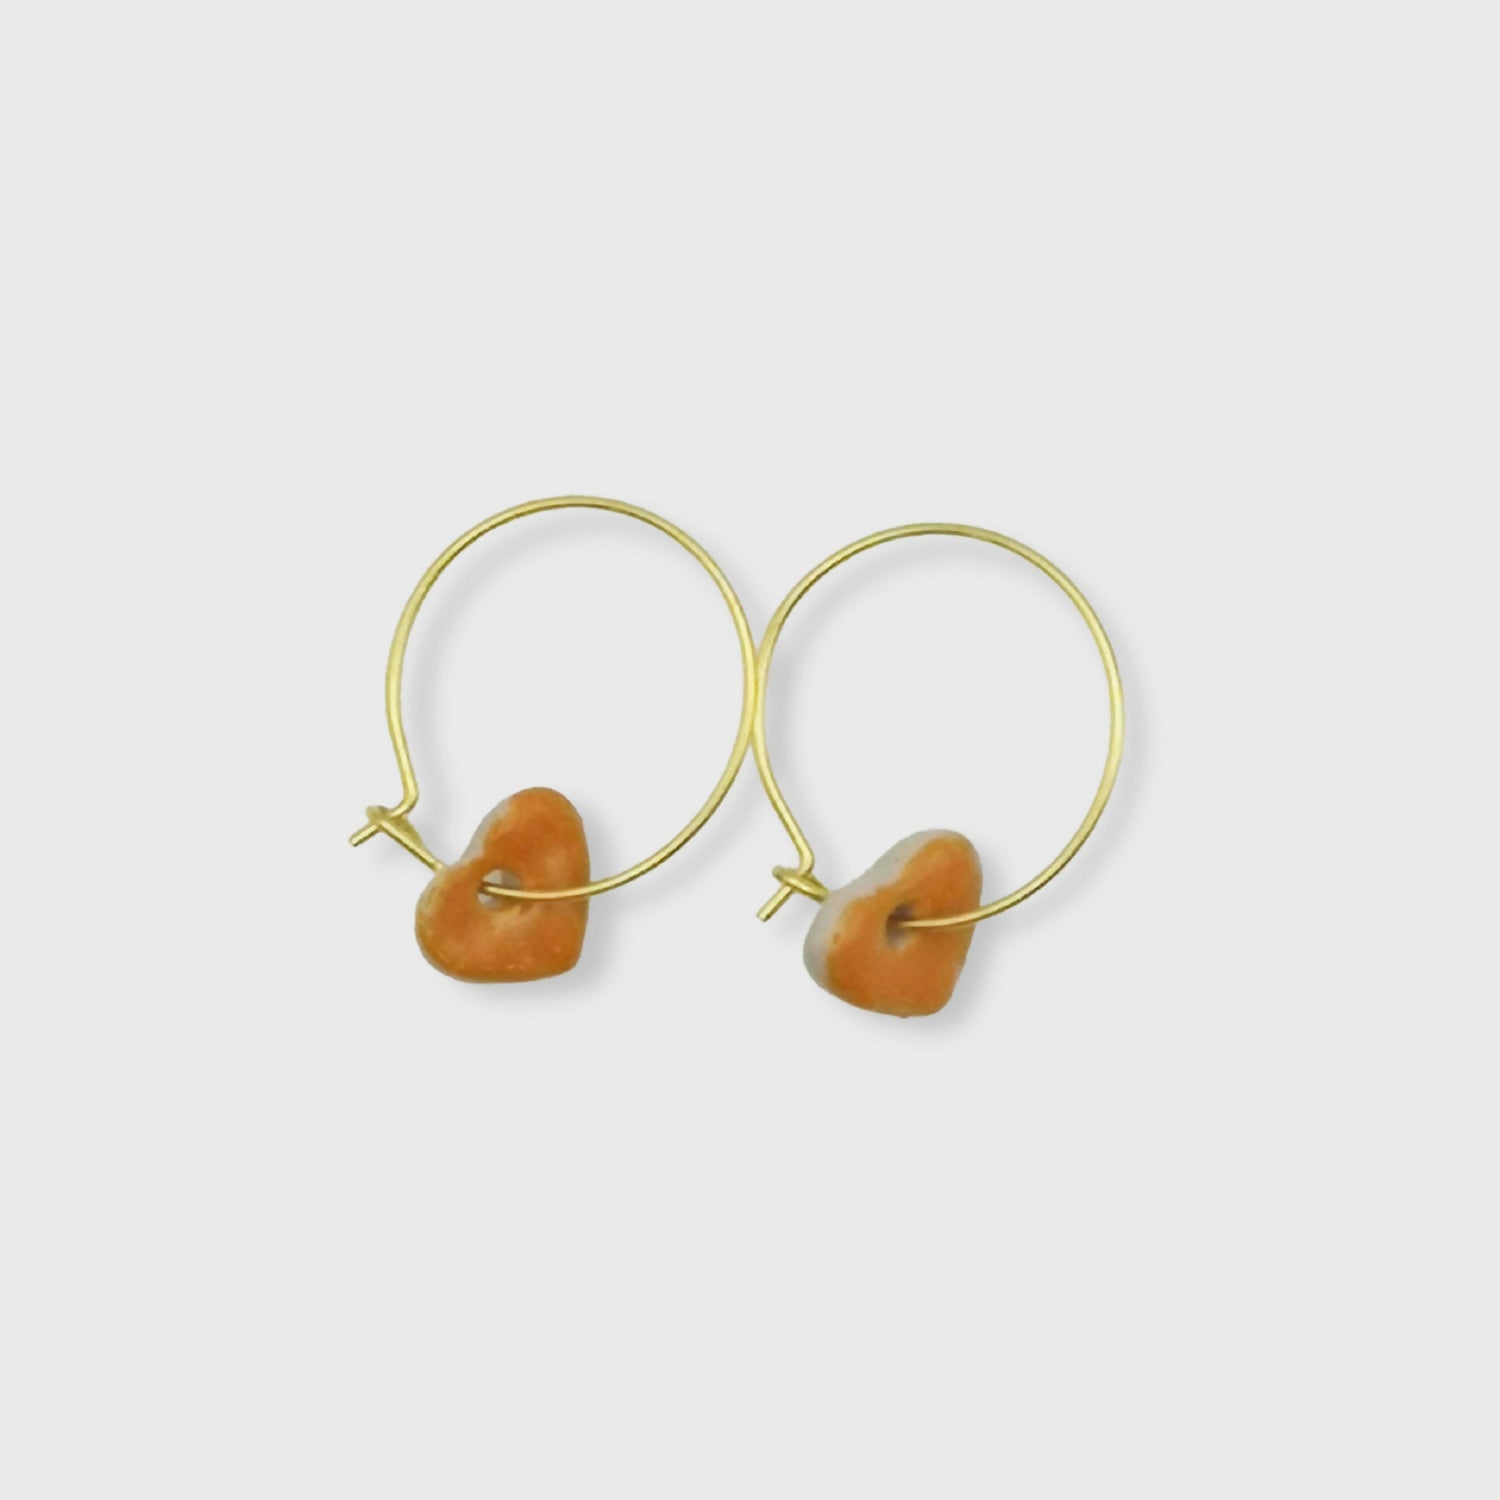 Boucles d'oreilles coeur orange et or pour femme aix en provence artisanat d'exception luxe 